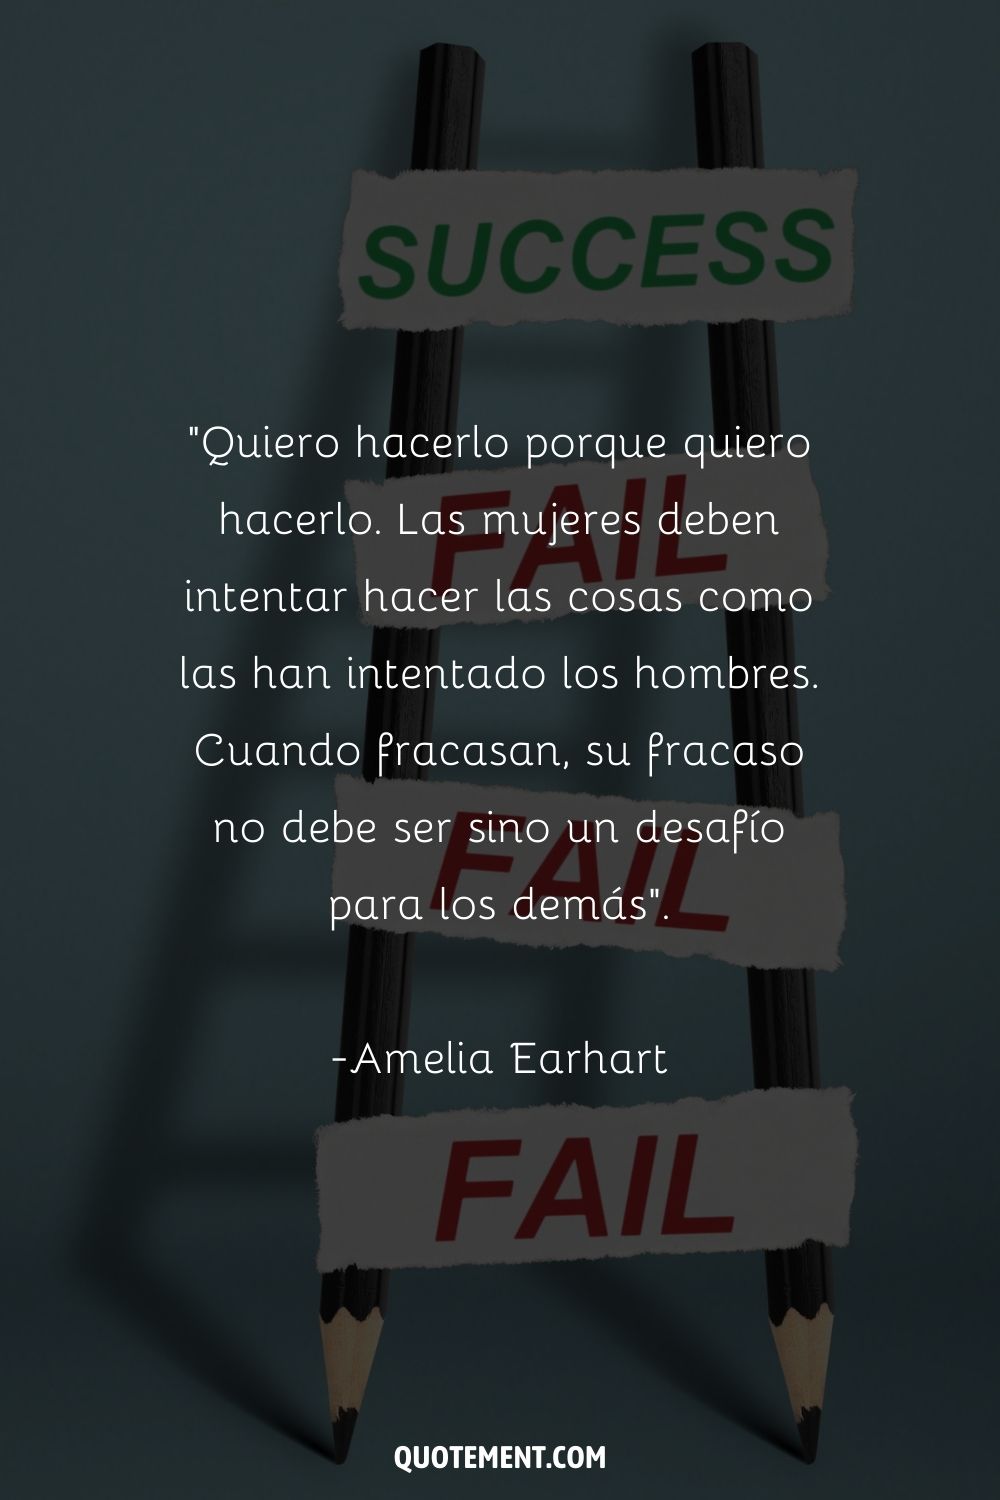 "Quiero hacerlo porque quiero hacerlo. Las mujeres deben intentar hacer las cosas como las han intentado los hombres. Cuando fracasan, su fracaso no debe ser sino un desafío para los demás". - Amelia Earhart